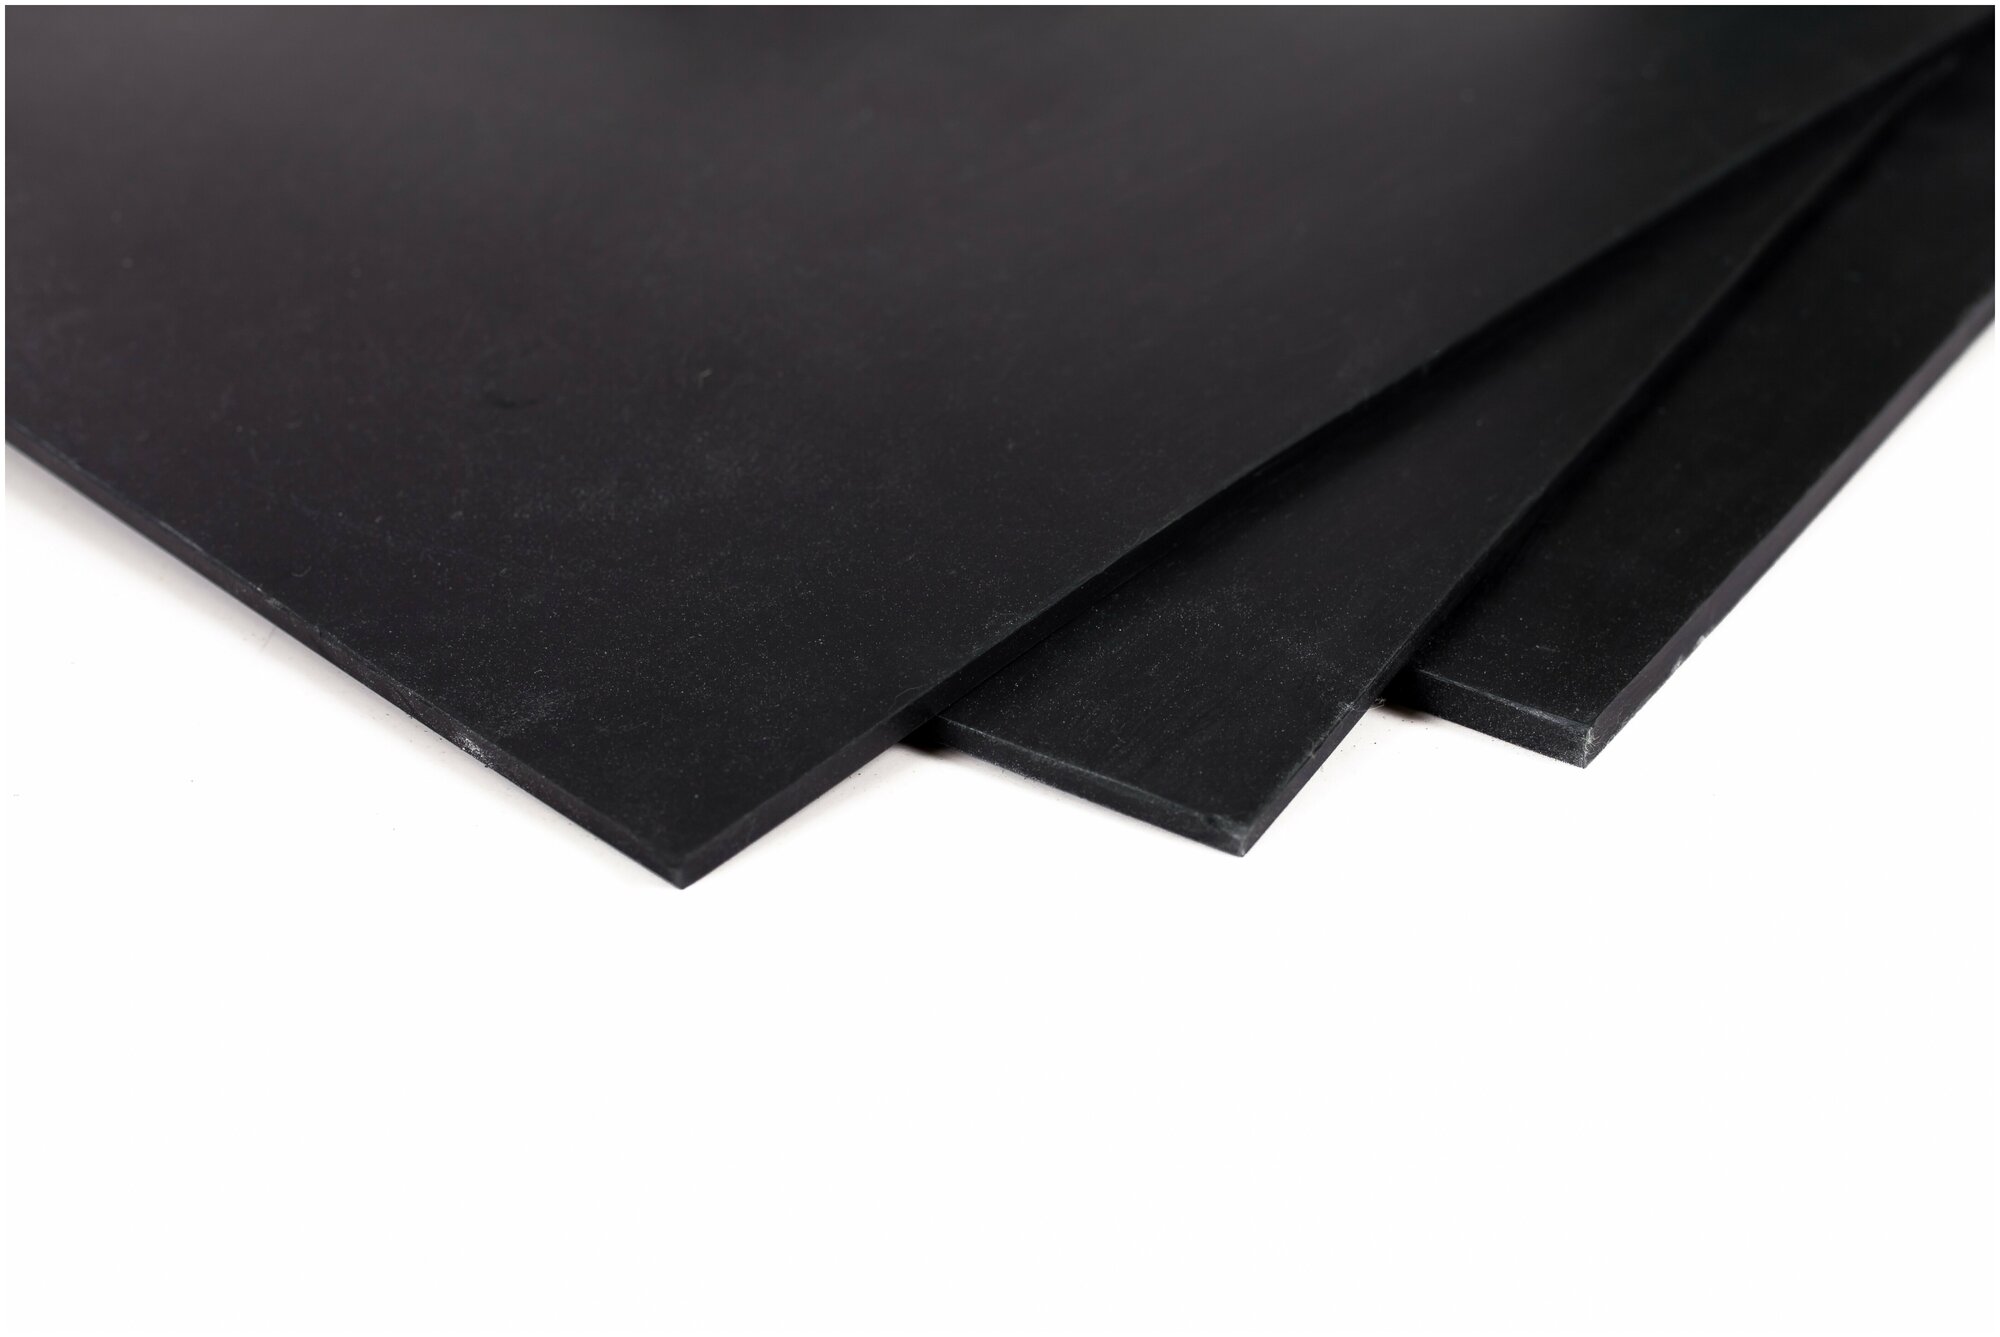 Пластина резиновая для вырубки прокладок, водостойкая. Черная, монолитная 5 мм. Размер 720х720 мм.